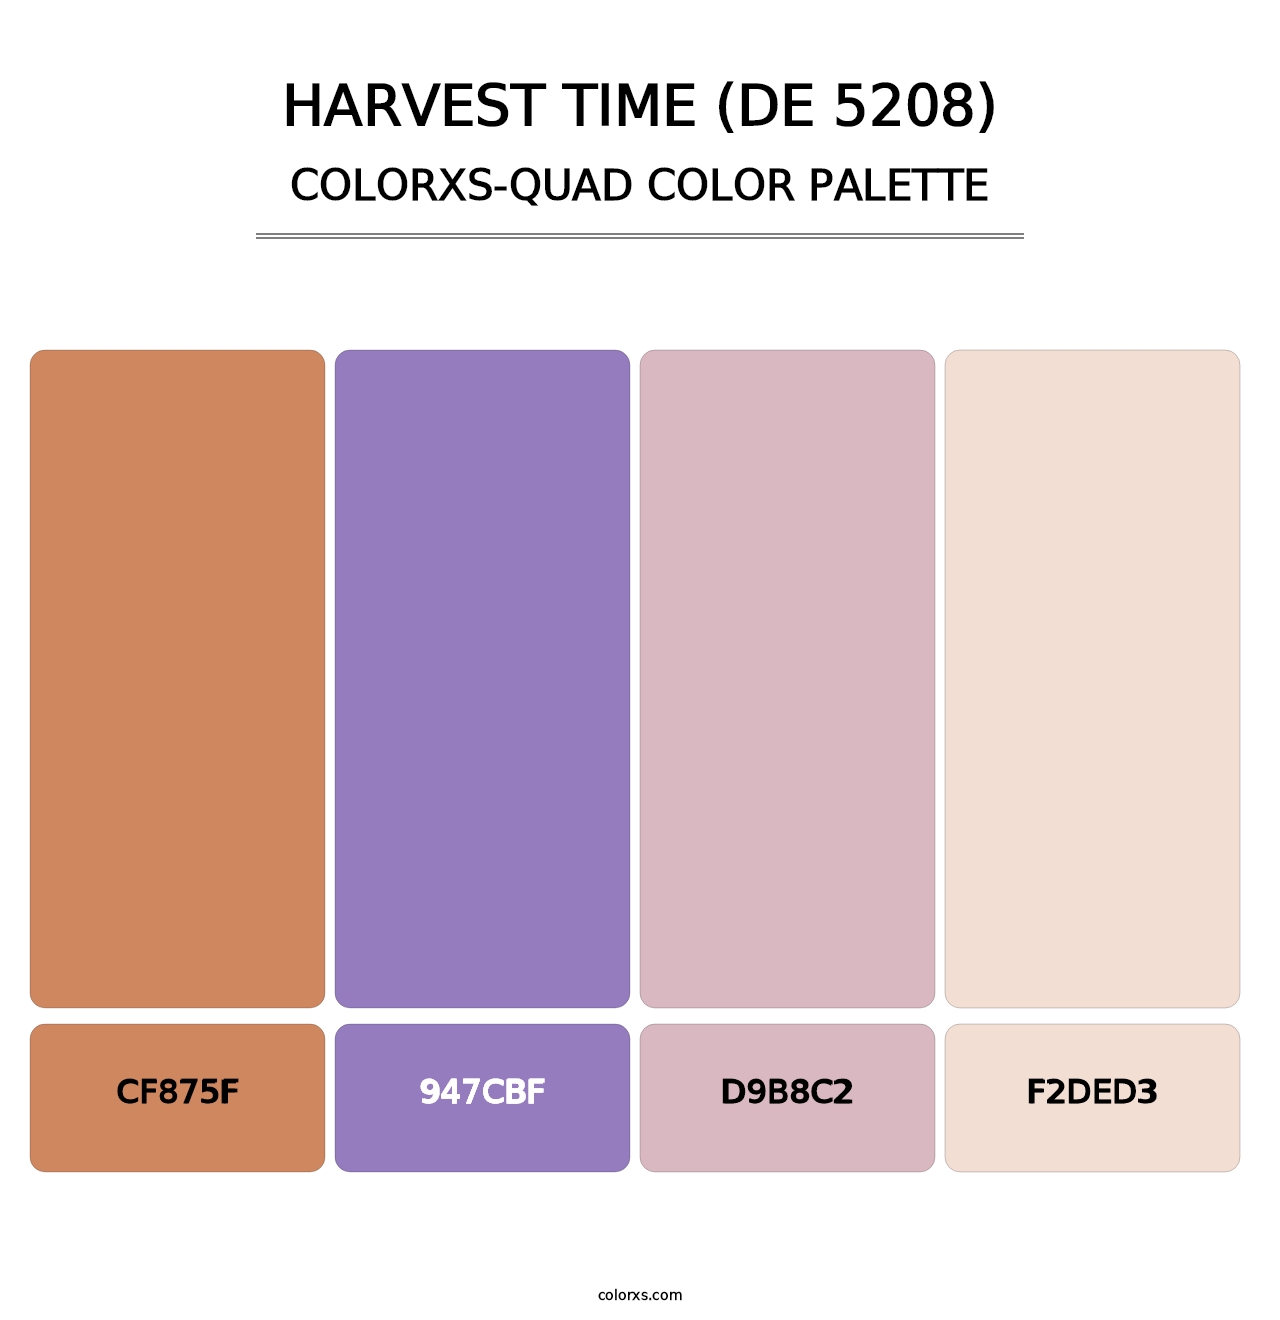 Harvest Time (DE 5208) - Colorxs Quad Palette